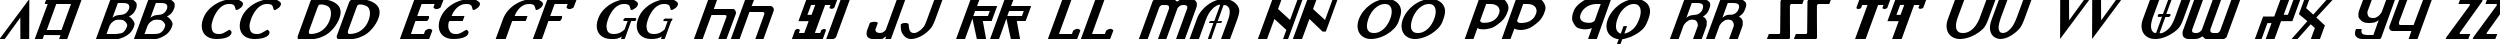 Пример написания английского алфавита шрифтом Lionheart Italic